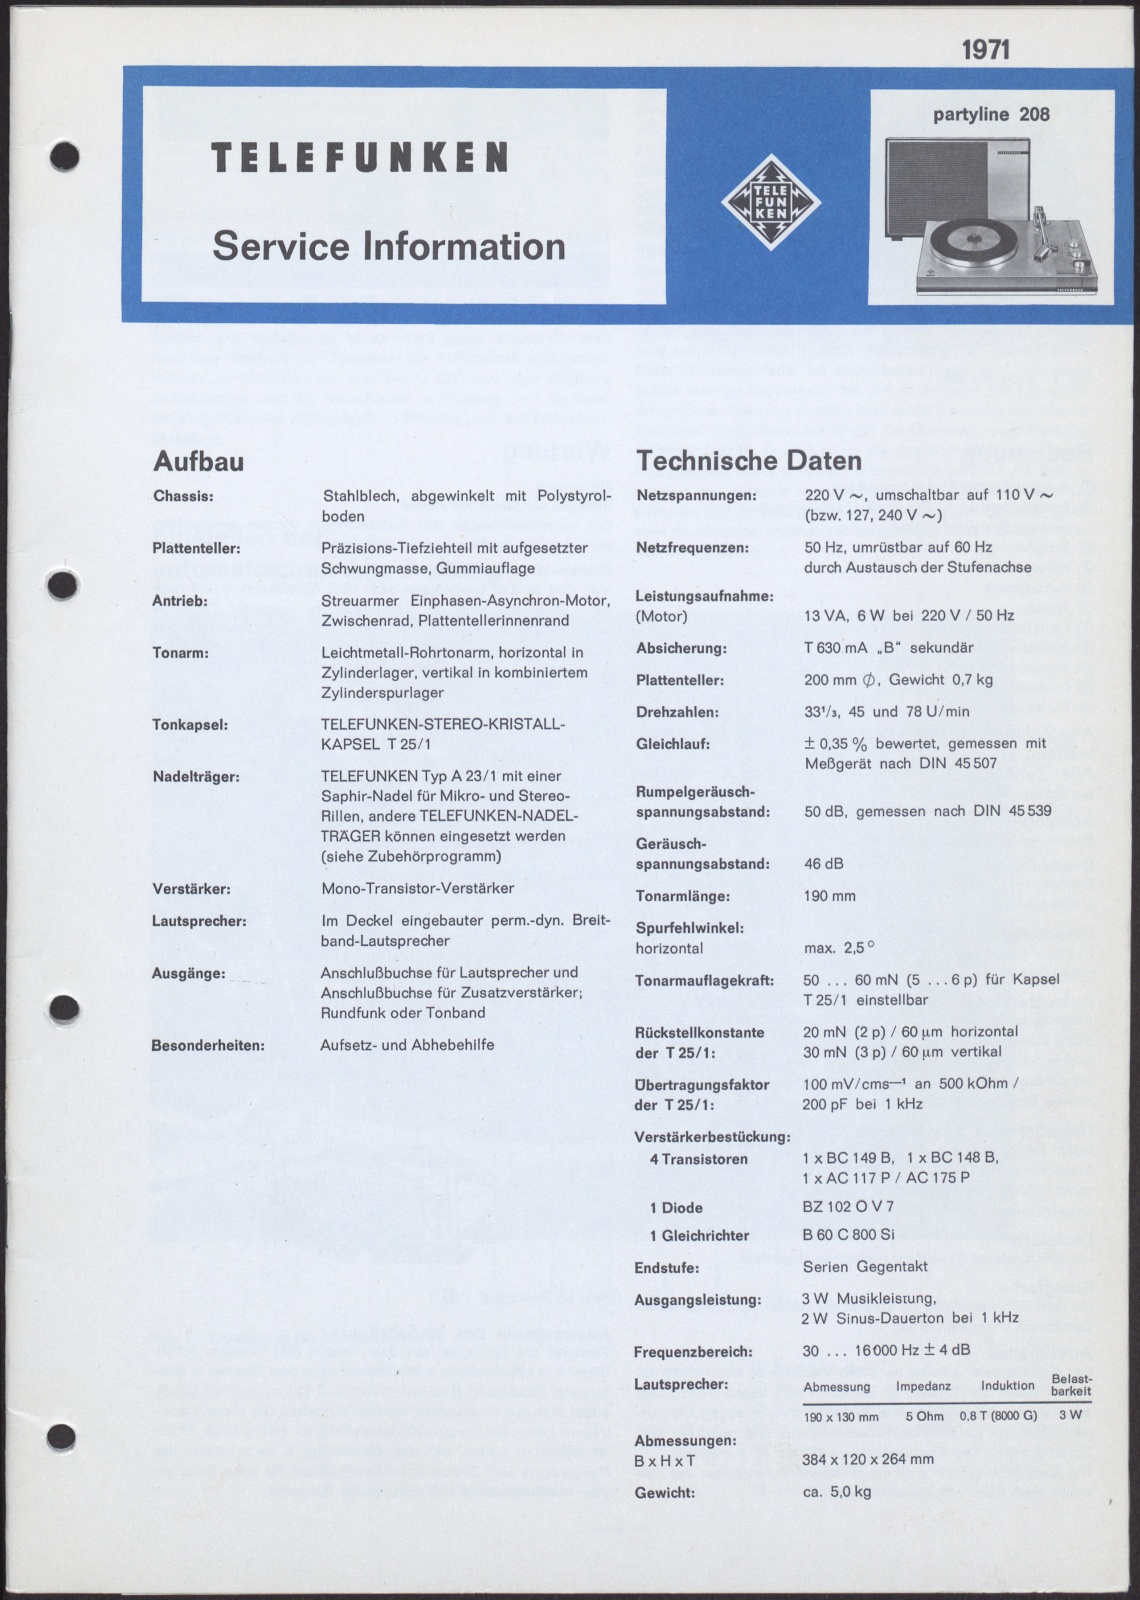 Bedienungsanleitung: Telefunken Service Information für Telefunken partyline 208 (Stiftung Deutsches Technikmuseum Berlin CC0)